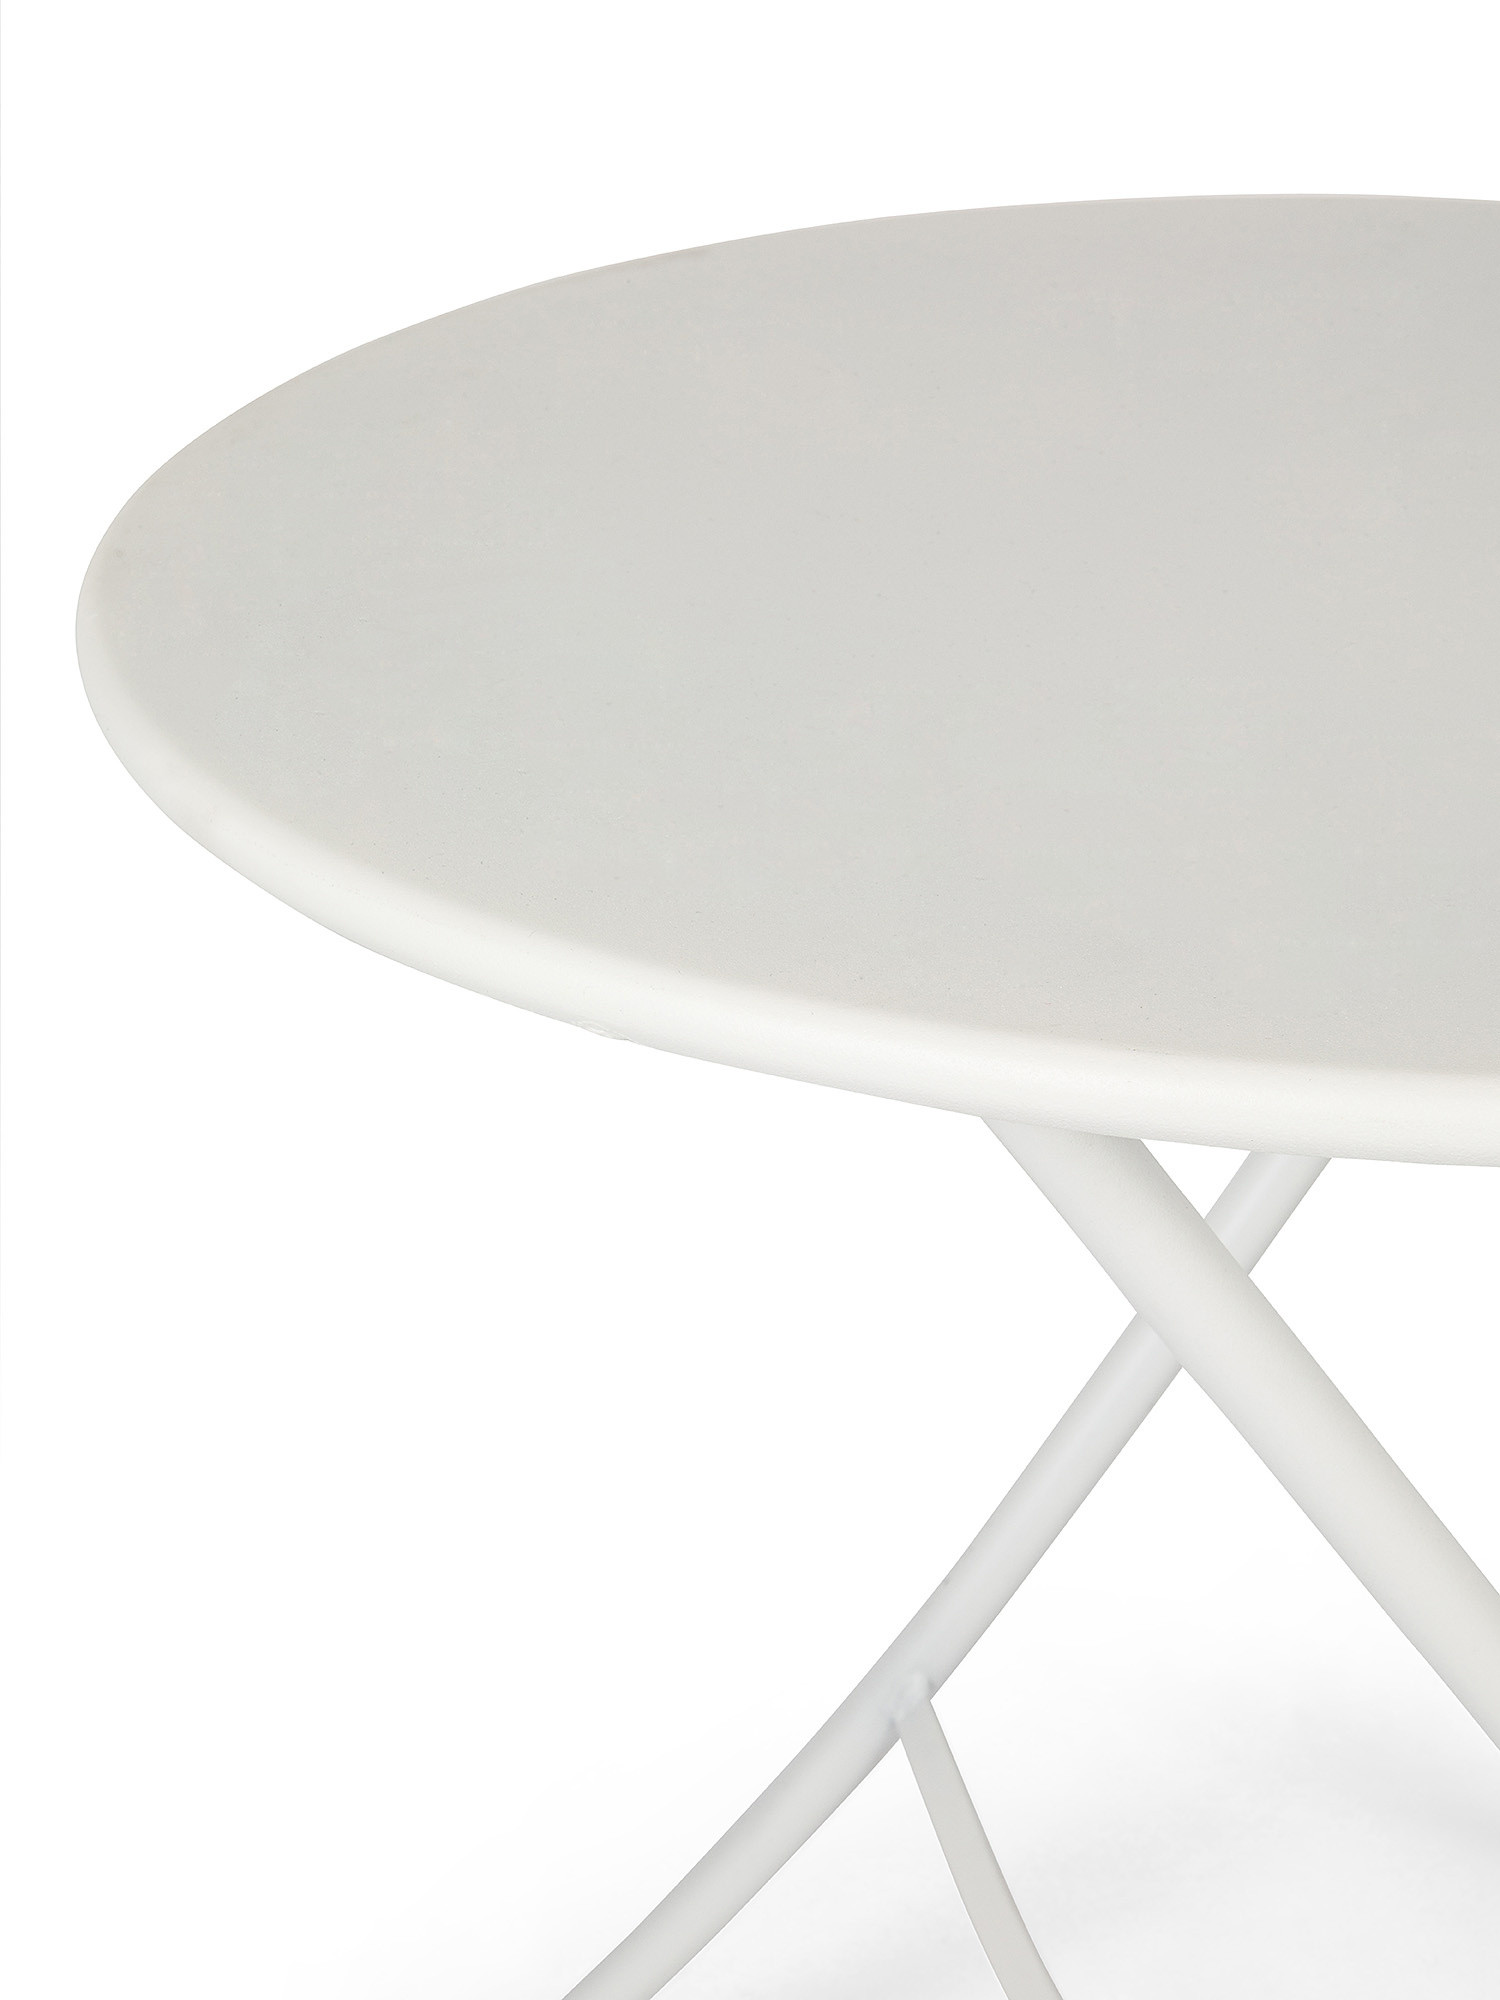 Fiam - Tavolo da esterno in acciaio richiudibile Sirio, Bianco, large